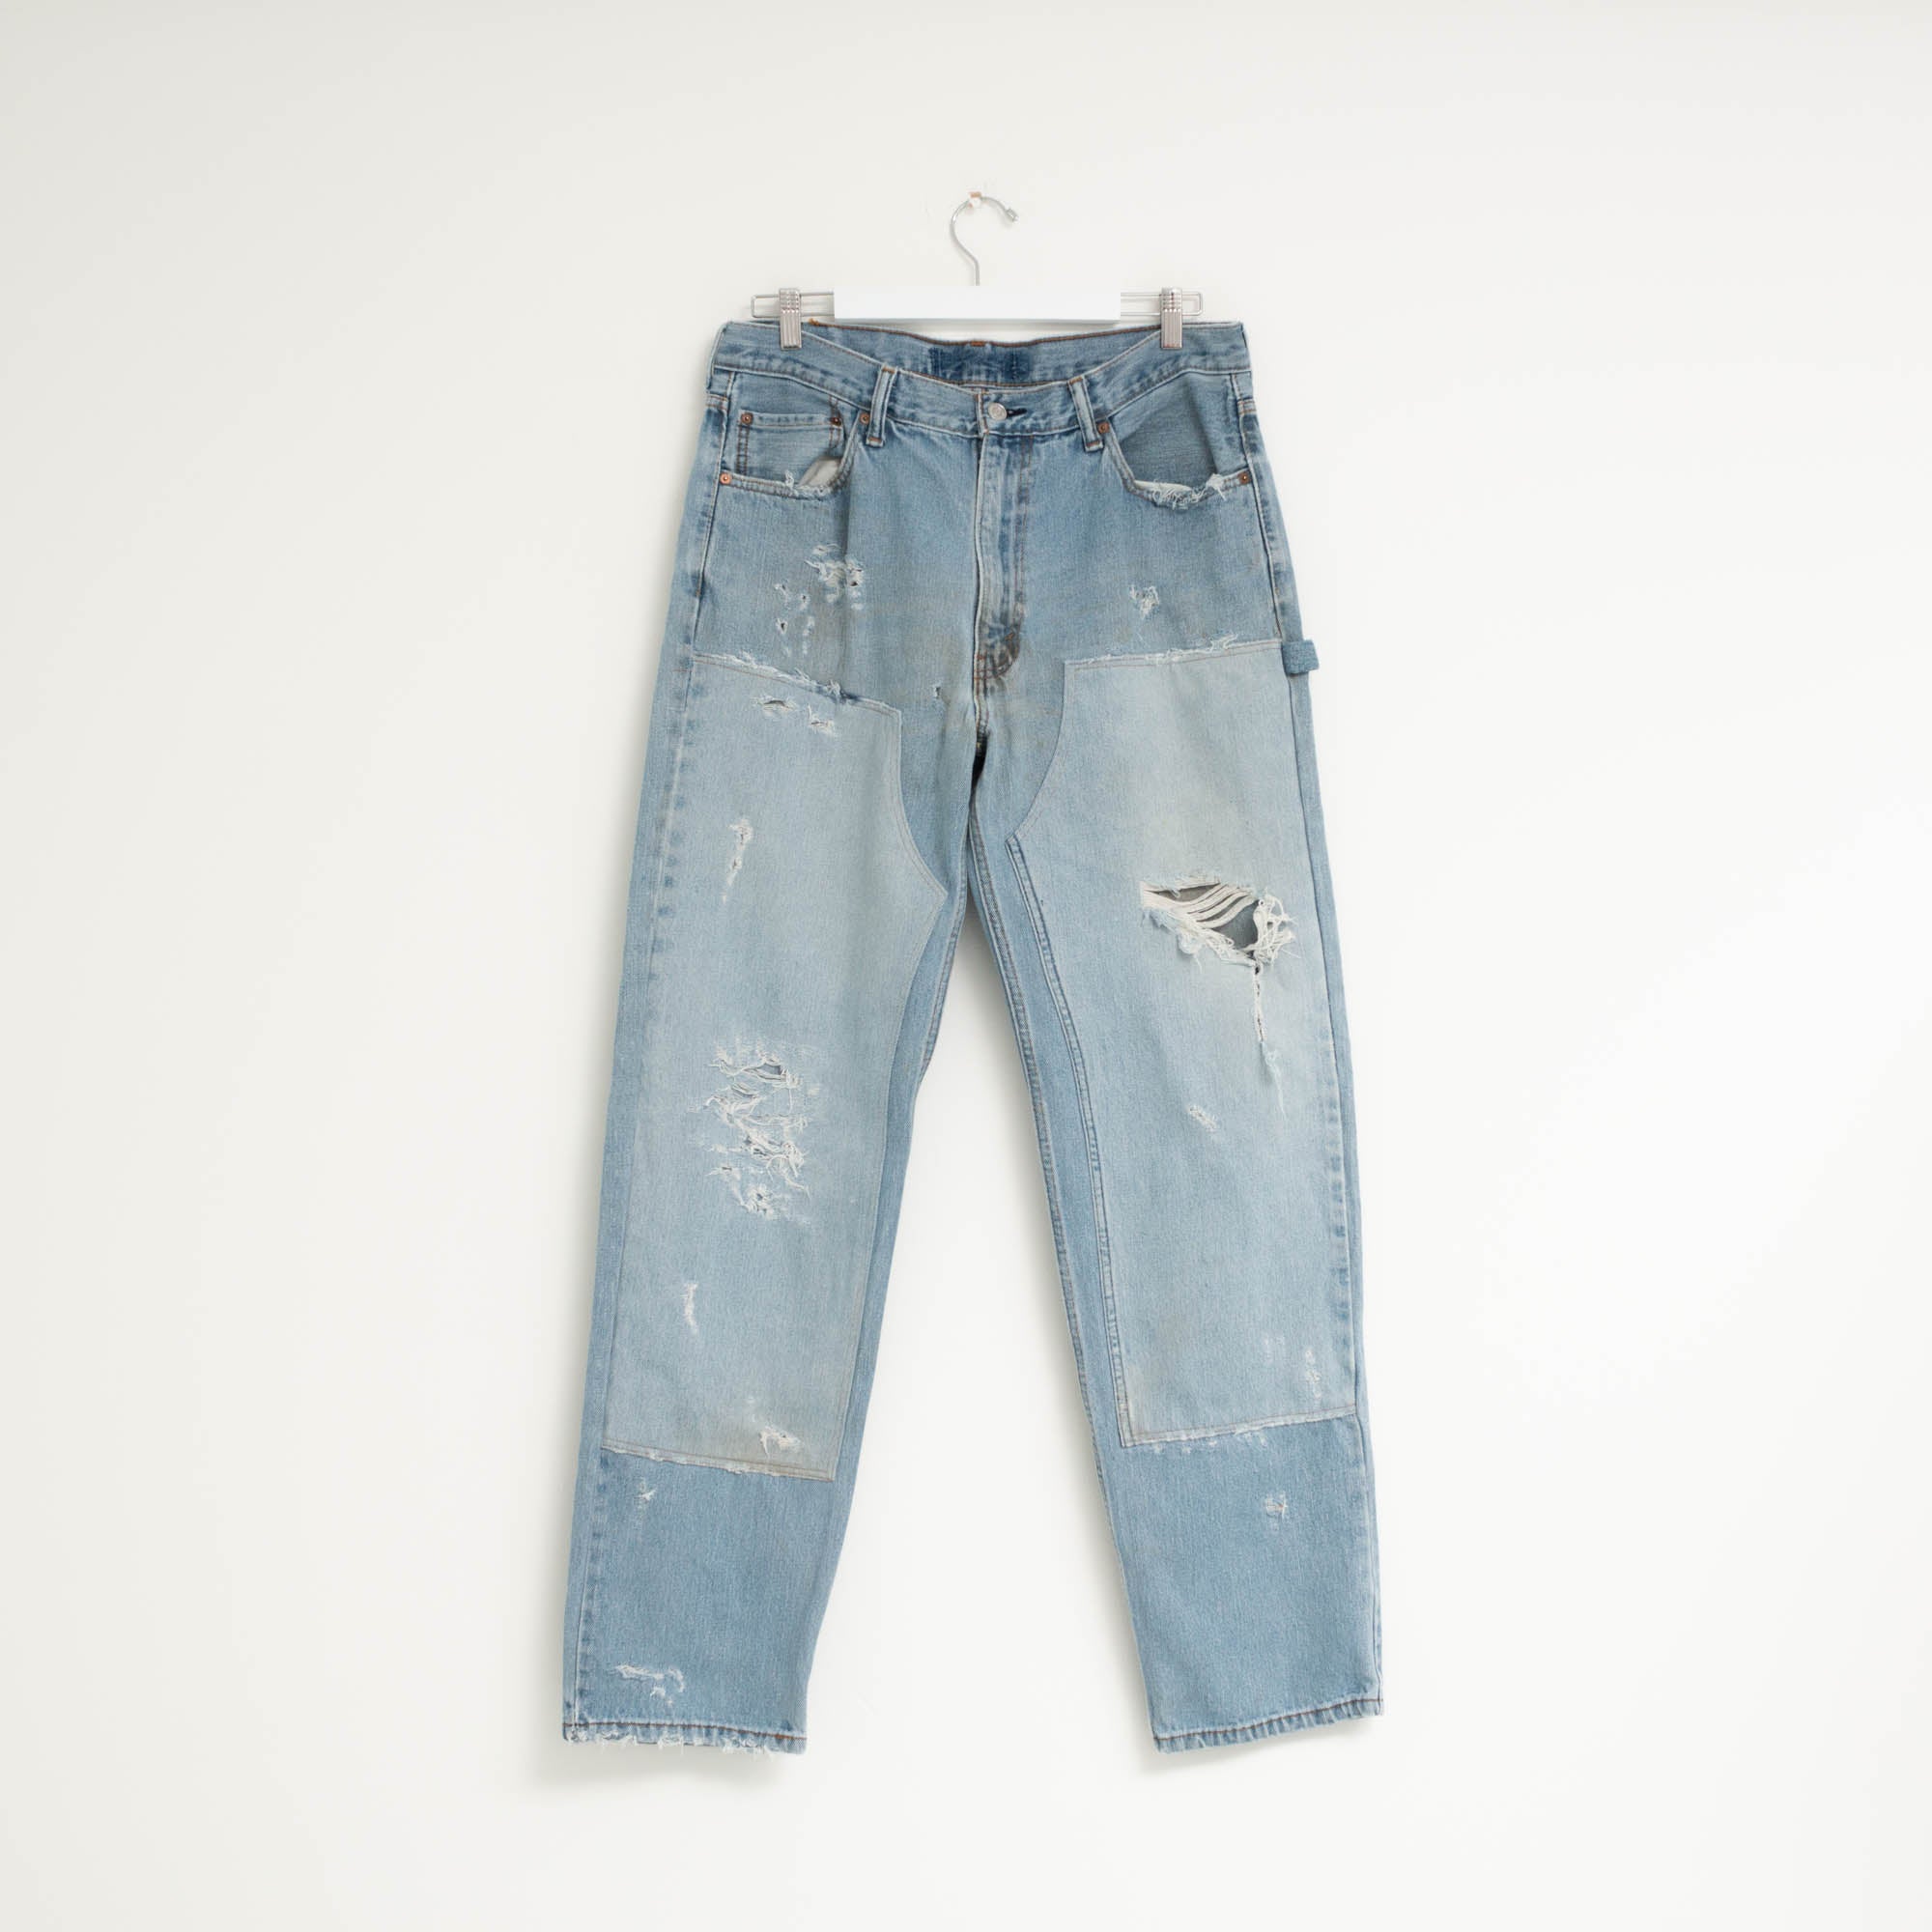 "CARPENTER" Jeans W36 L34